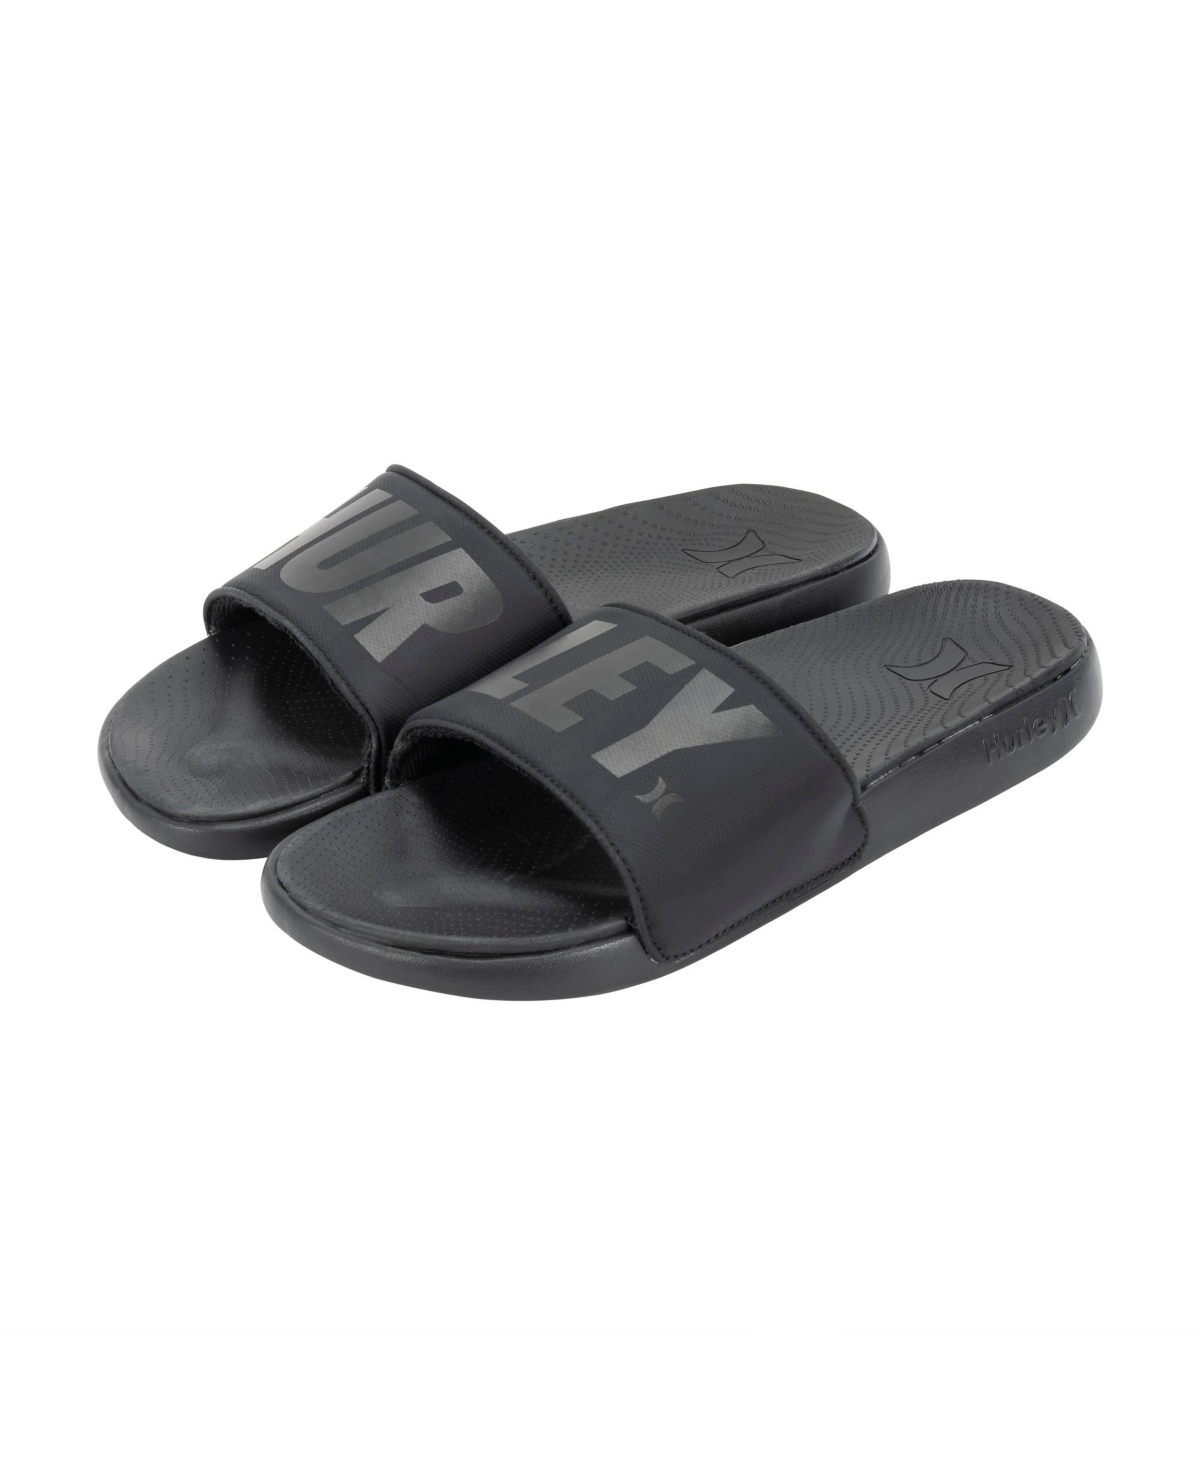 Men's Jumbo Tier Slide Sandals - Black/White